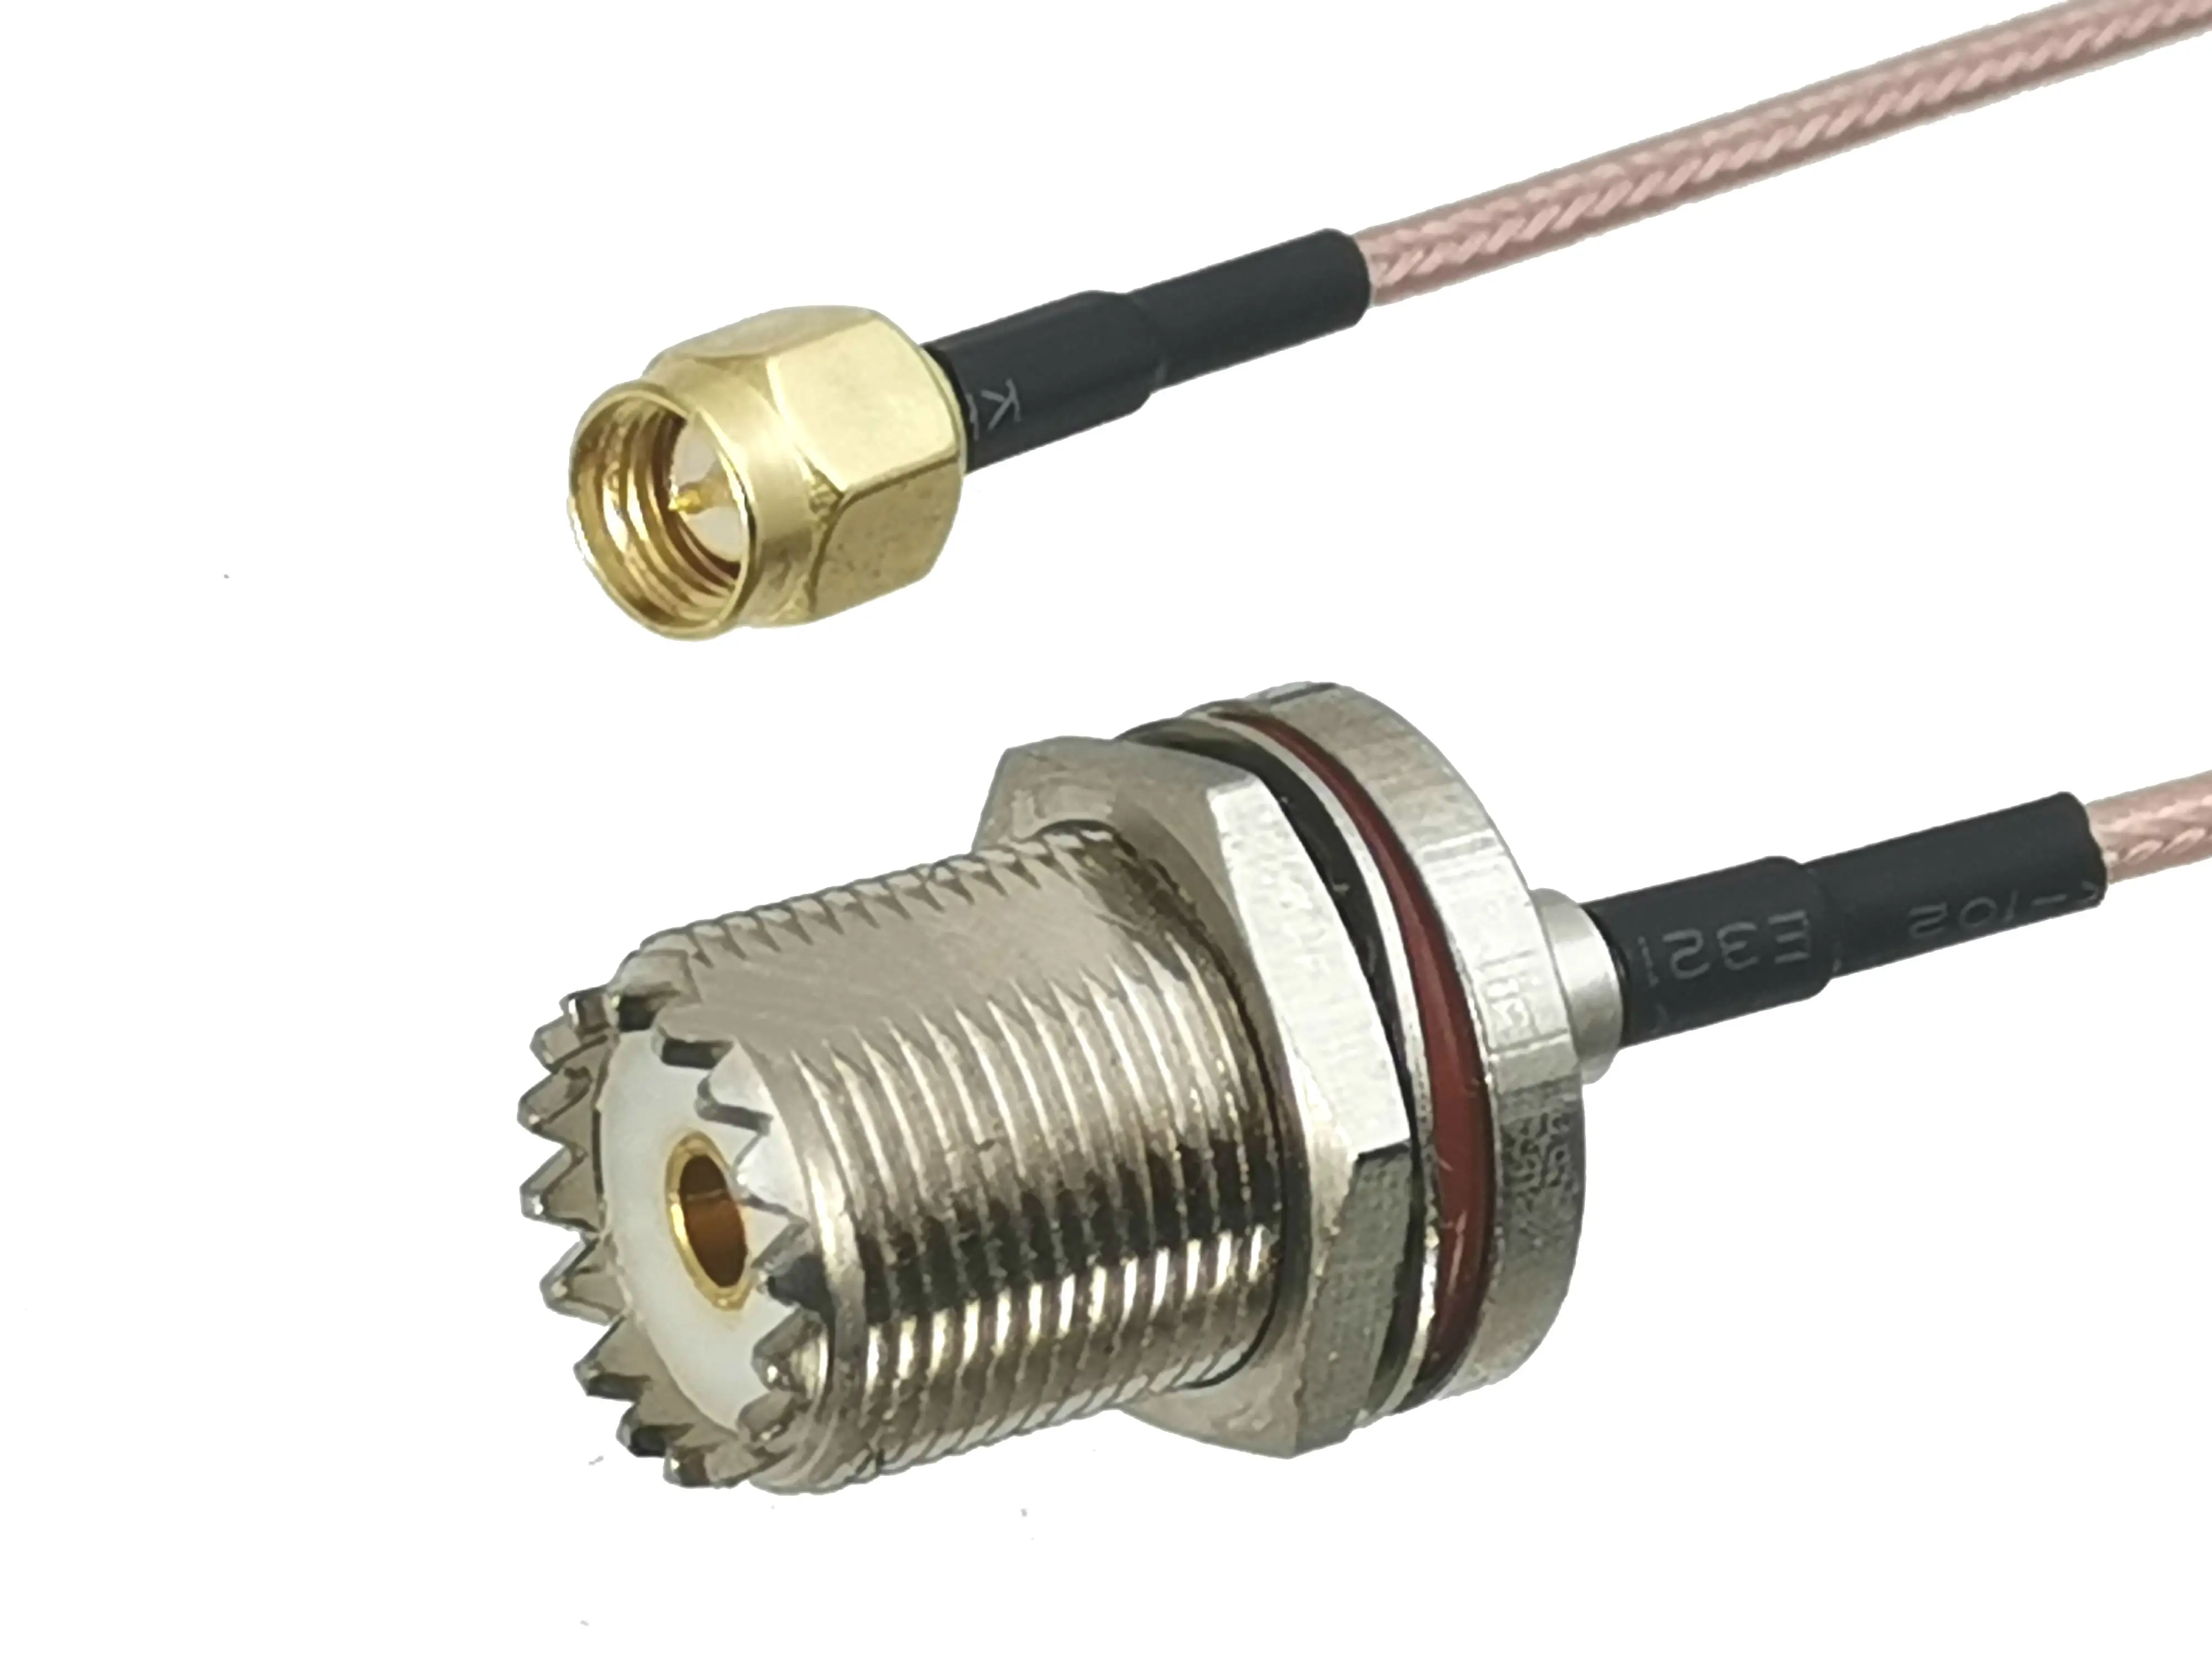 

1 шт. RG316 SMA штекер к UHF SO239 женский разъем переборки RF коаксиальный гибкий соединительный кабель для радиоантенны 4 дюйма ~ 10 м